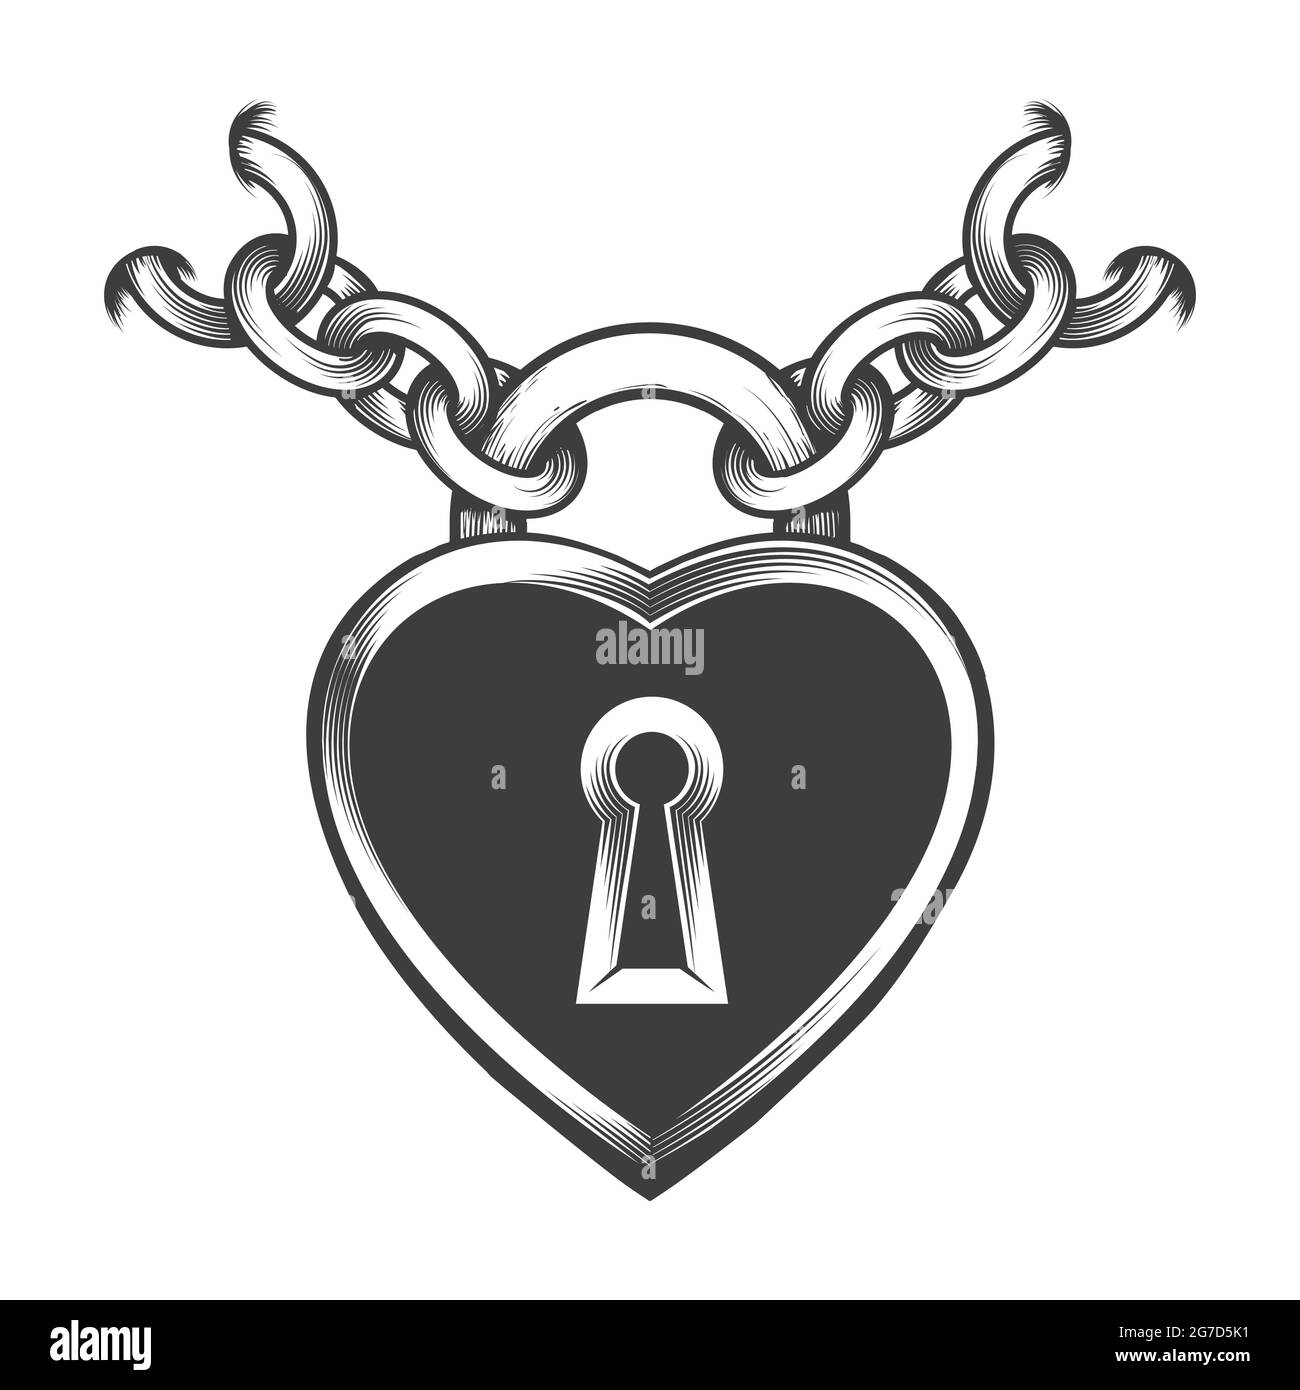 Tatouage de la serrure en forme de coeur et des chaînes dessinées en style gravure. Illustration vectorielle. Illustration de Vecteur